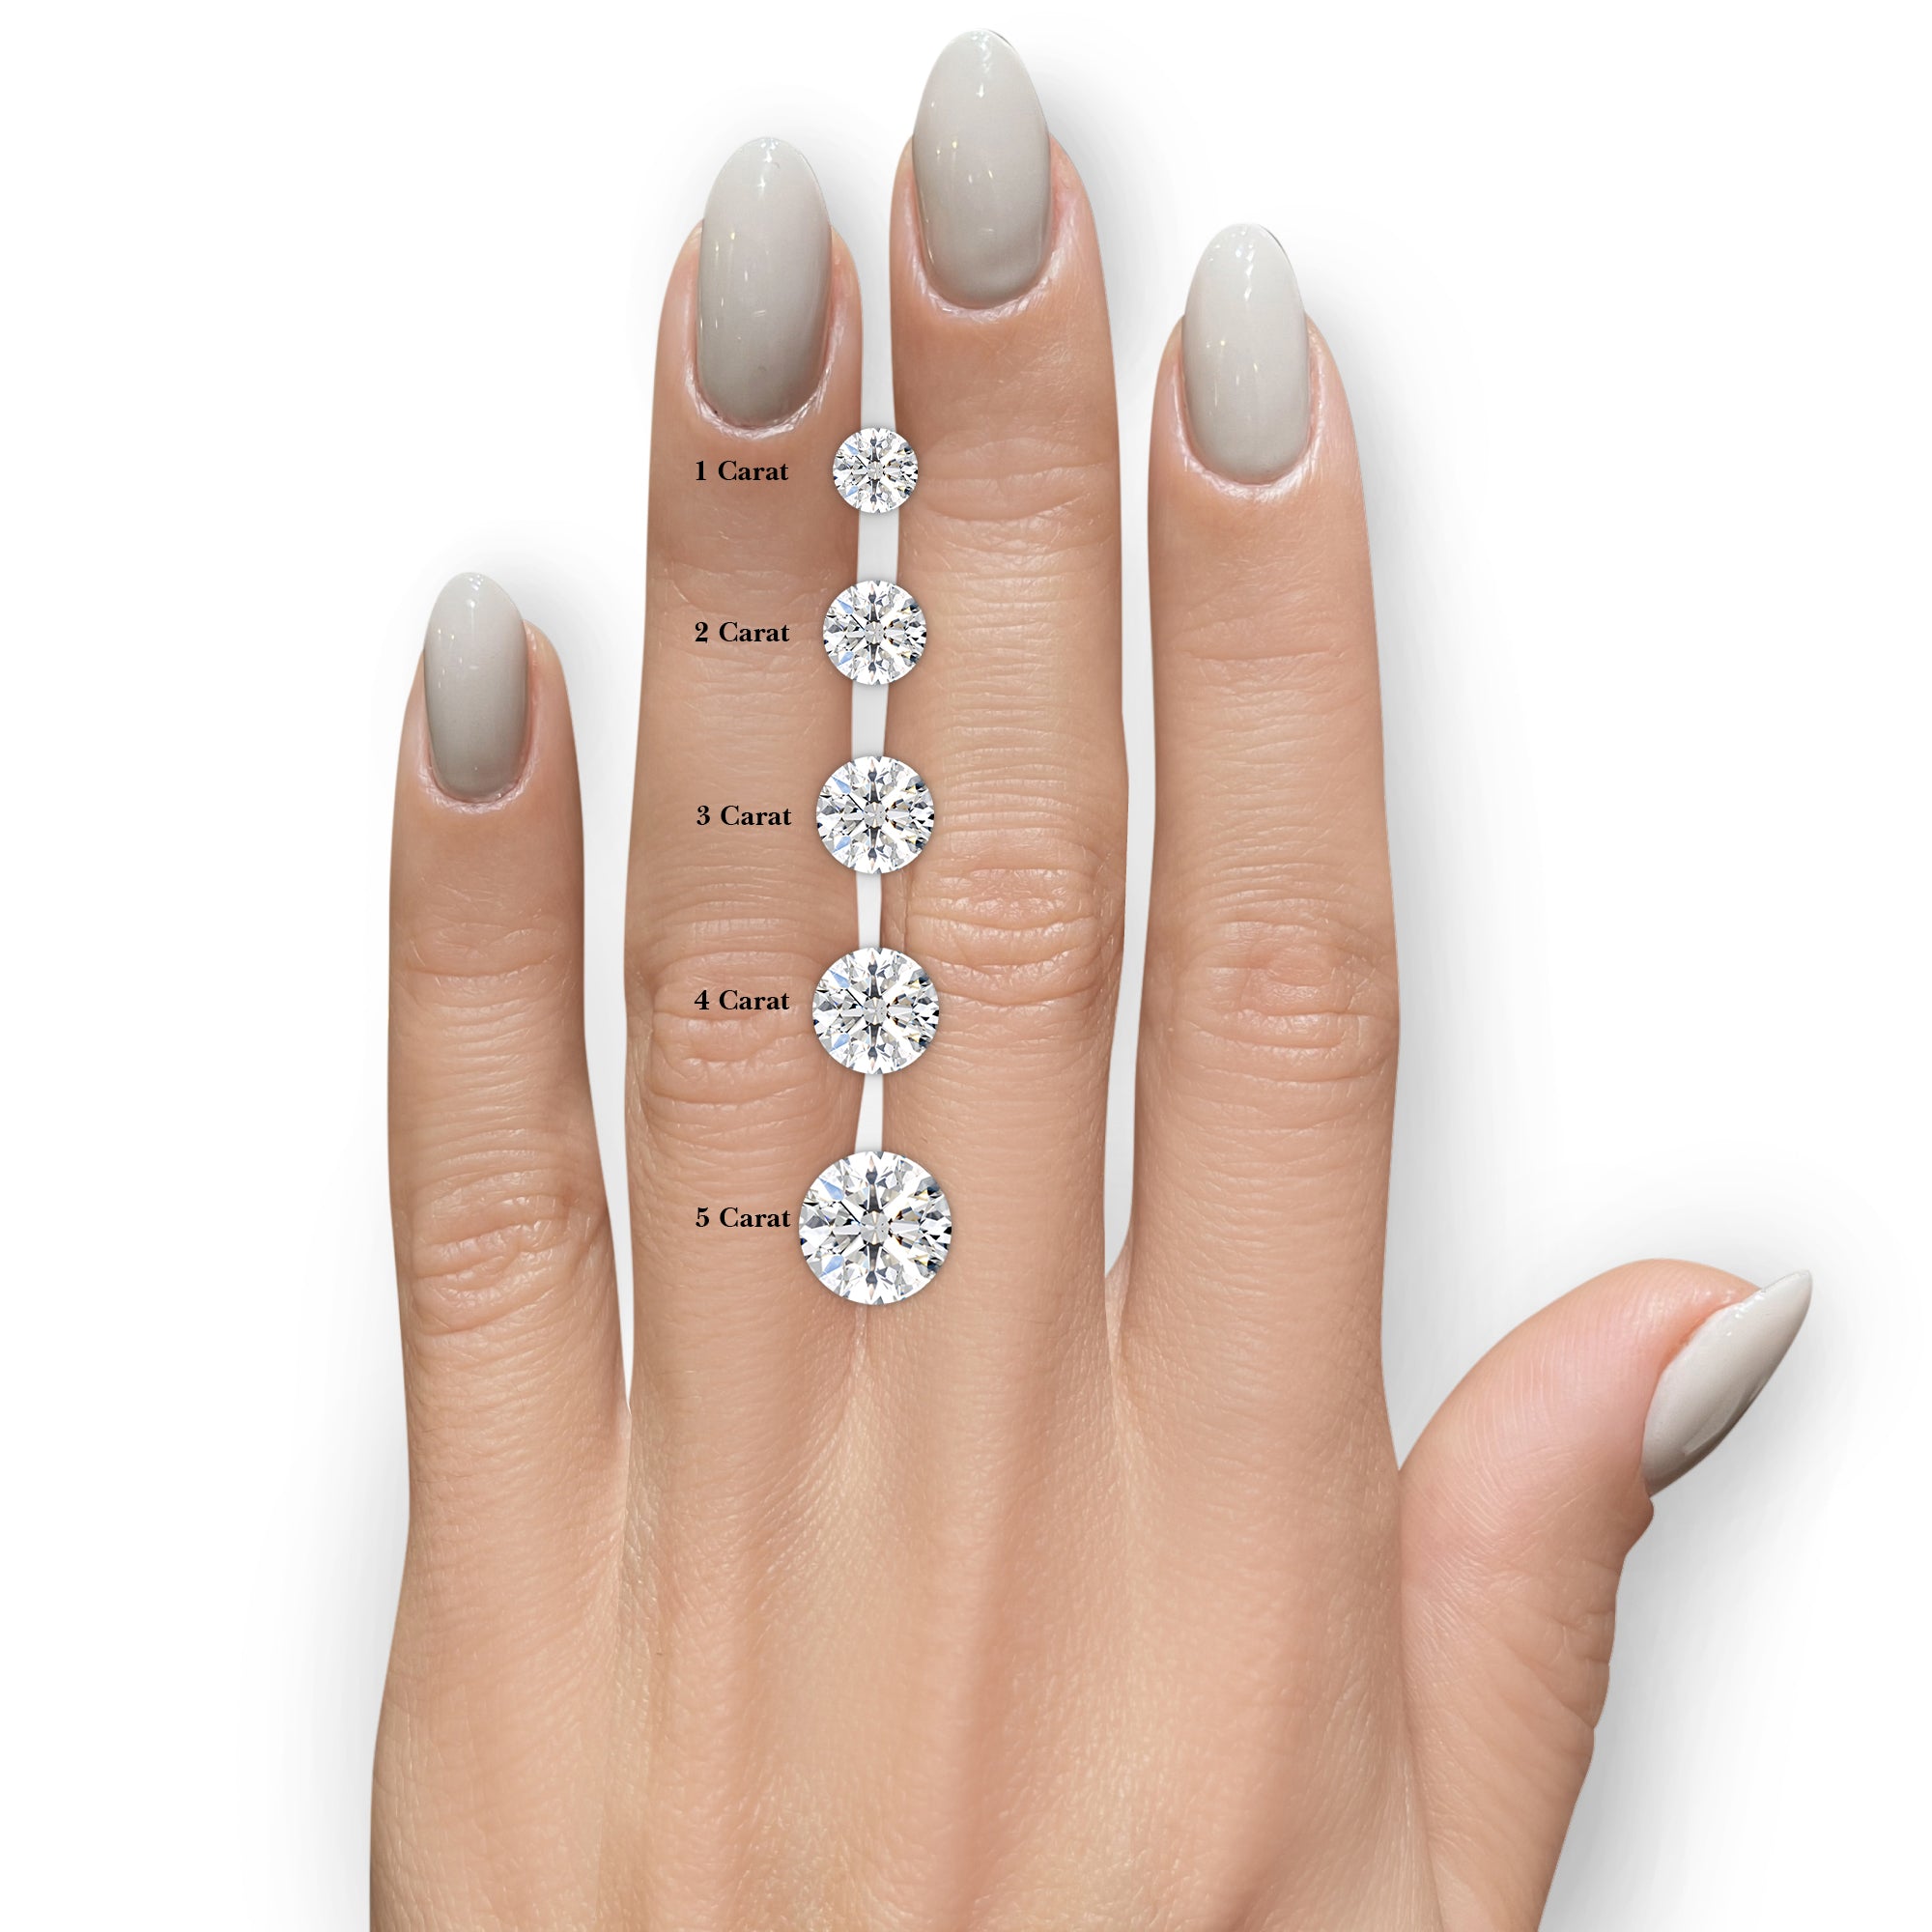 Carmen Diamond Engagement Ring -14K White Gold